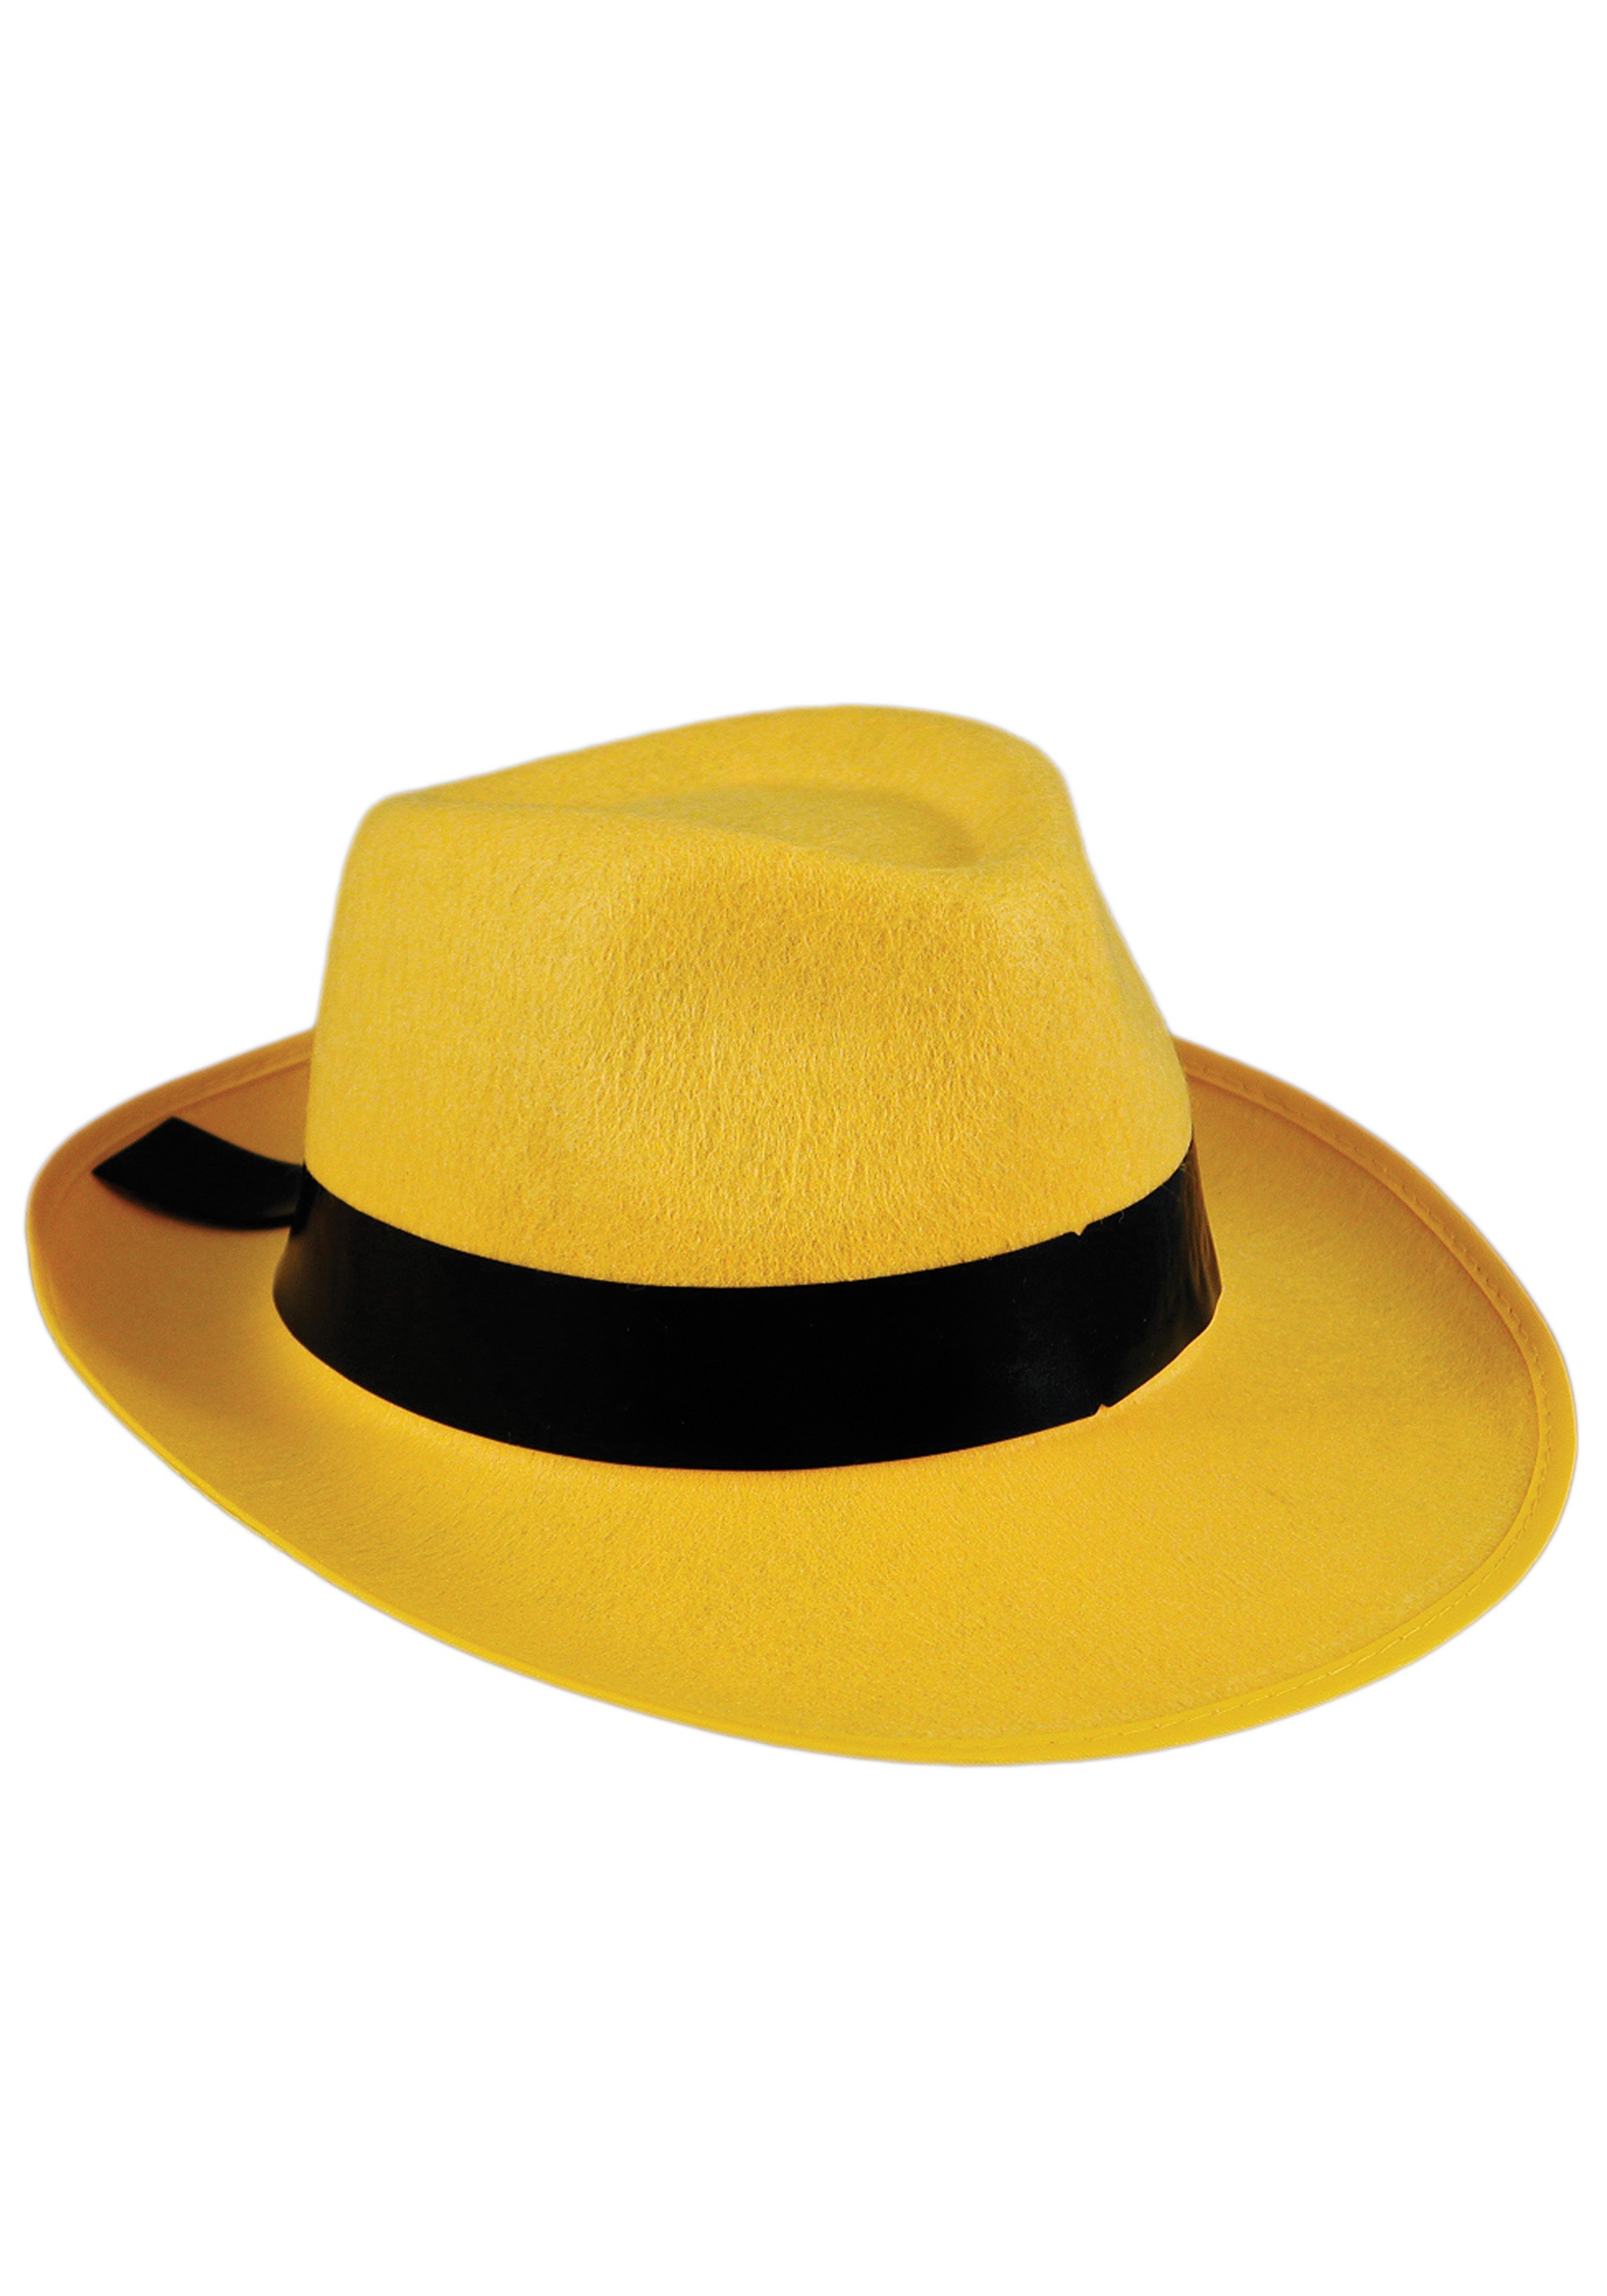 Yellow Fedora Costume Hat